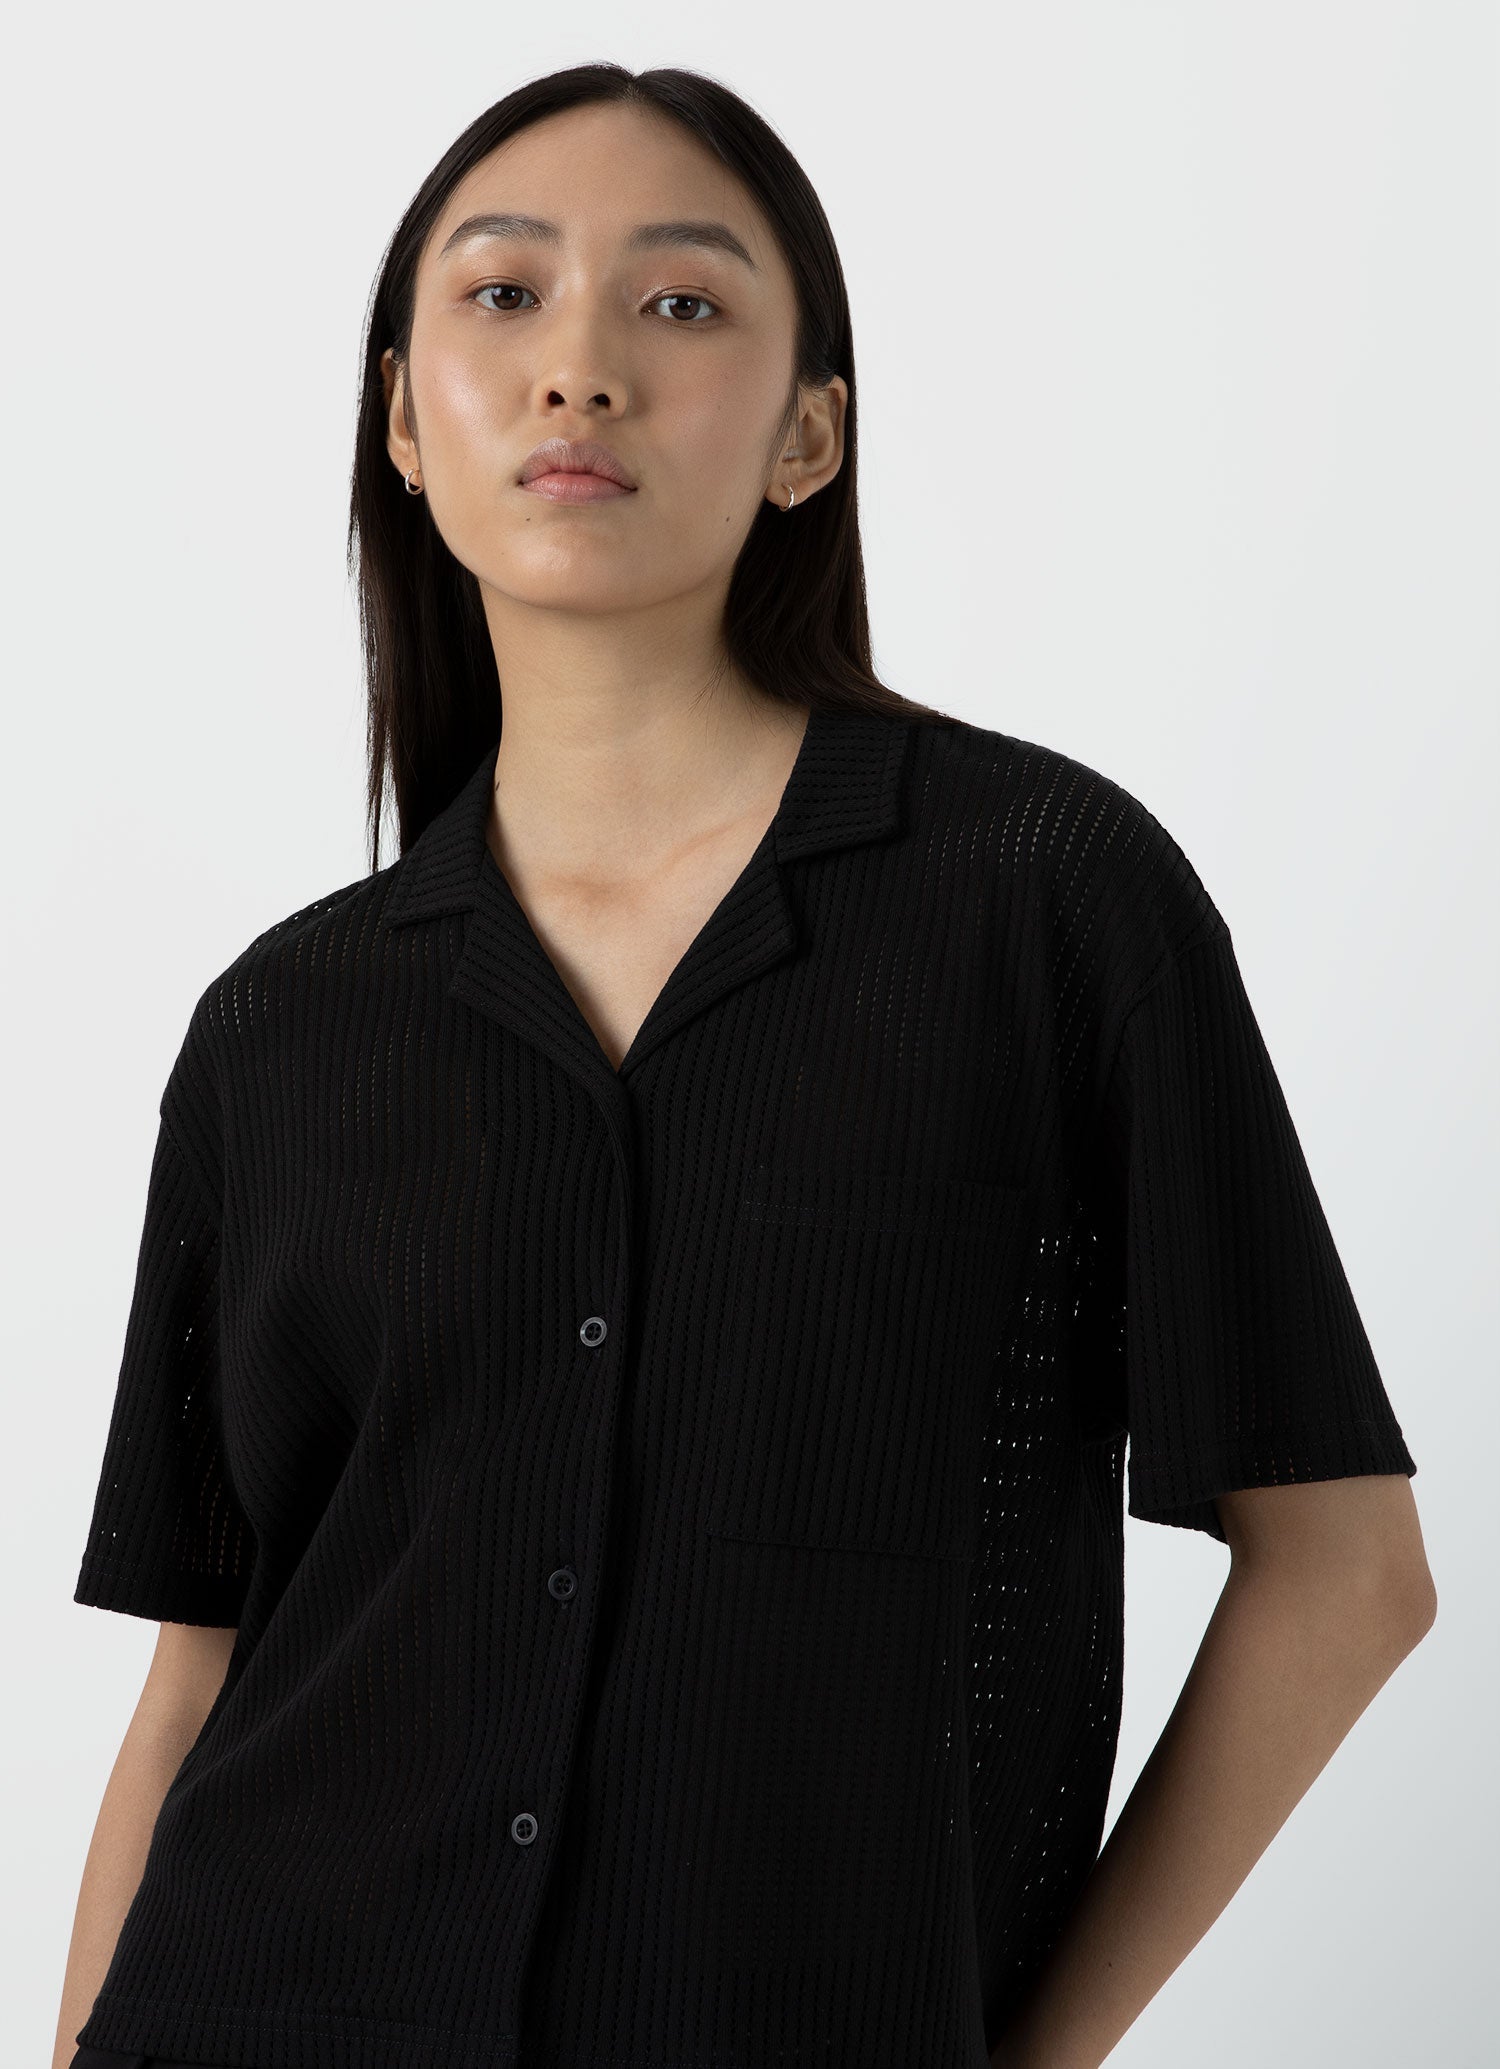 Women's Lace Mesh Shirt in Black